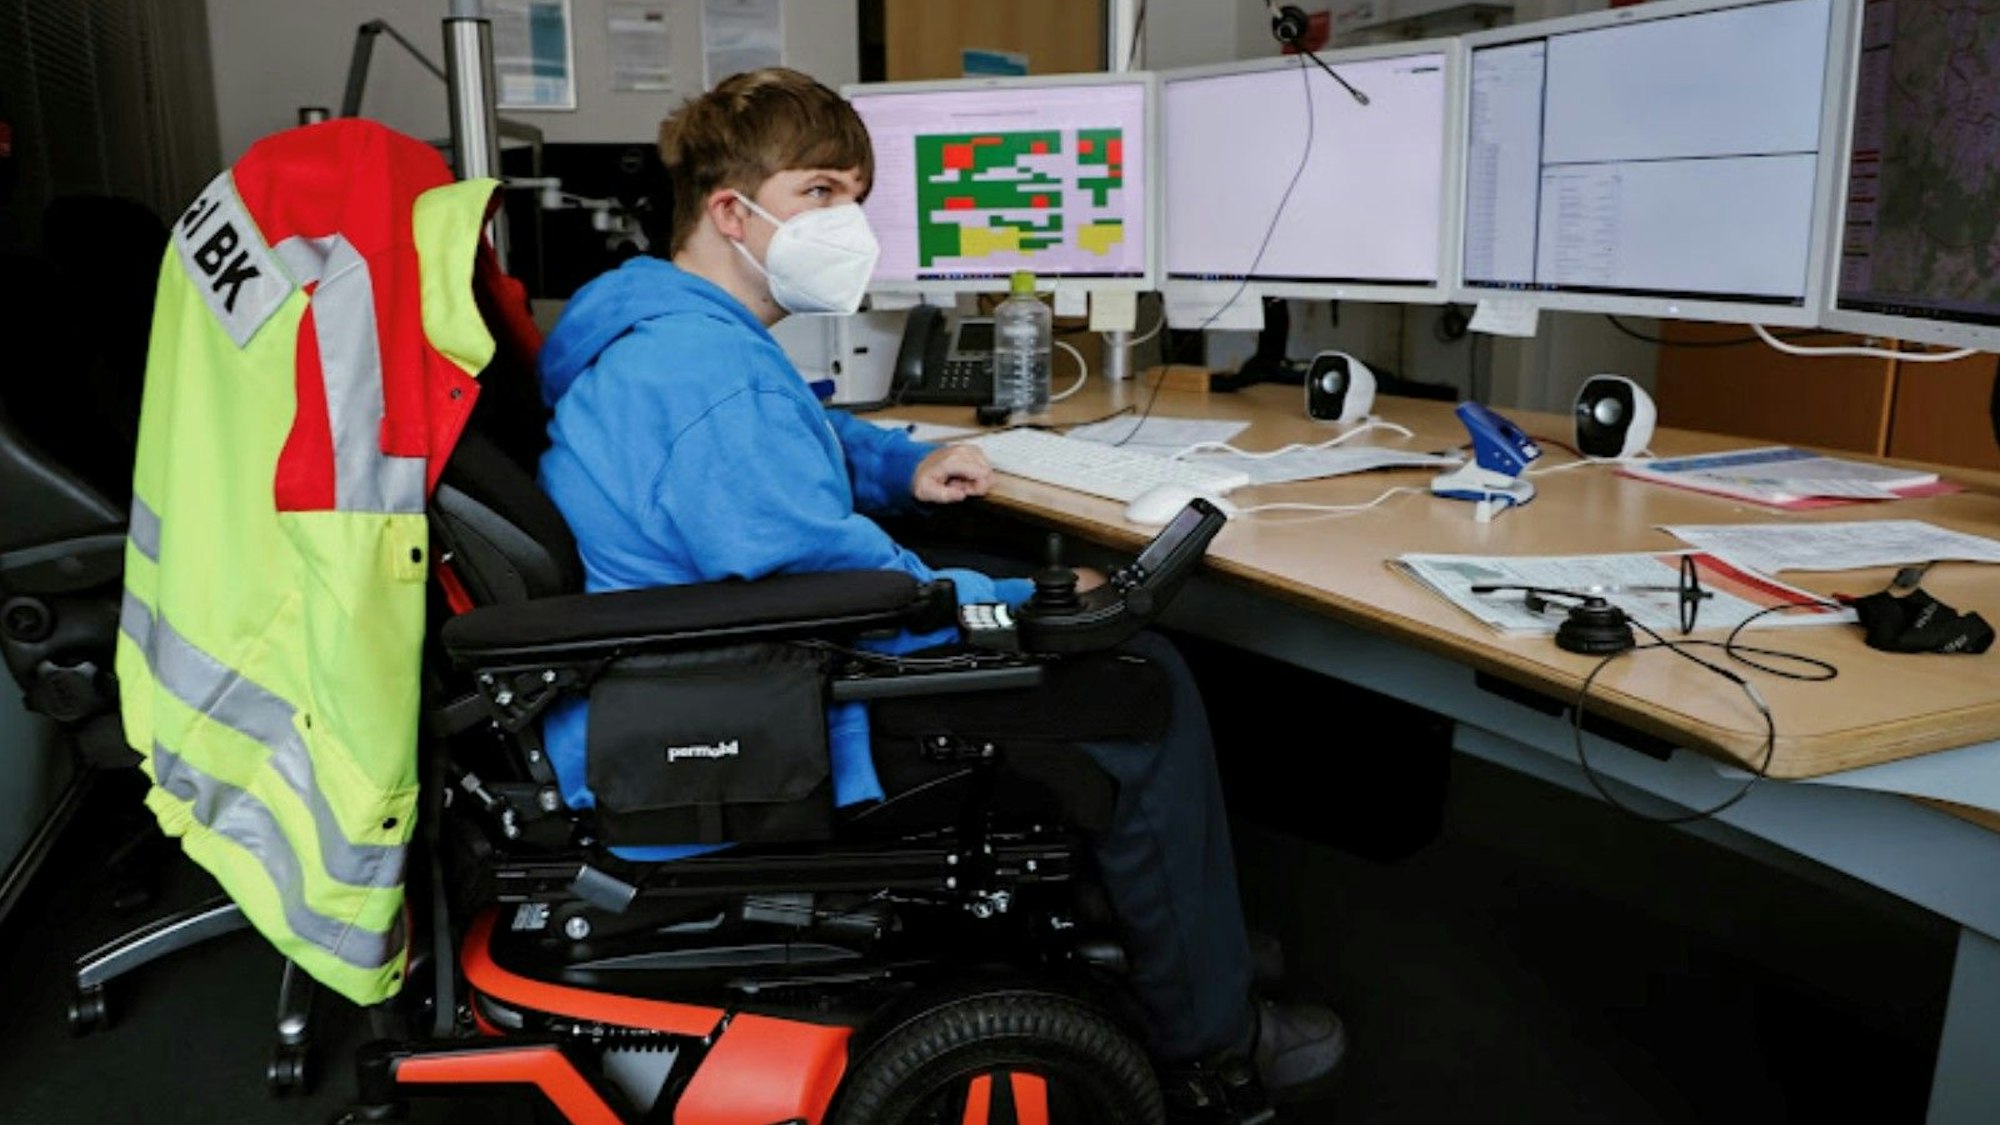 Ein junger Mann mit Maske sitzt in einem Rollstuhl vor einem Schreibtisch. Er schaut konzentriert auf die vier Computer-Bildschirme vor sich.